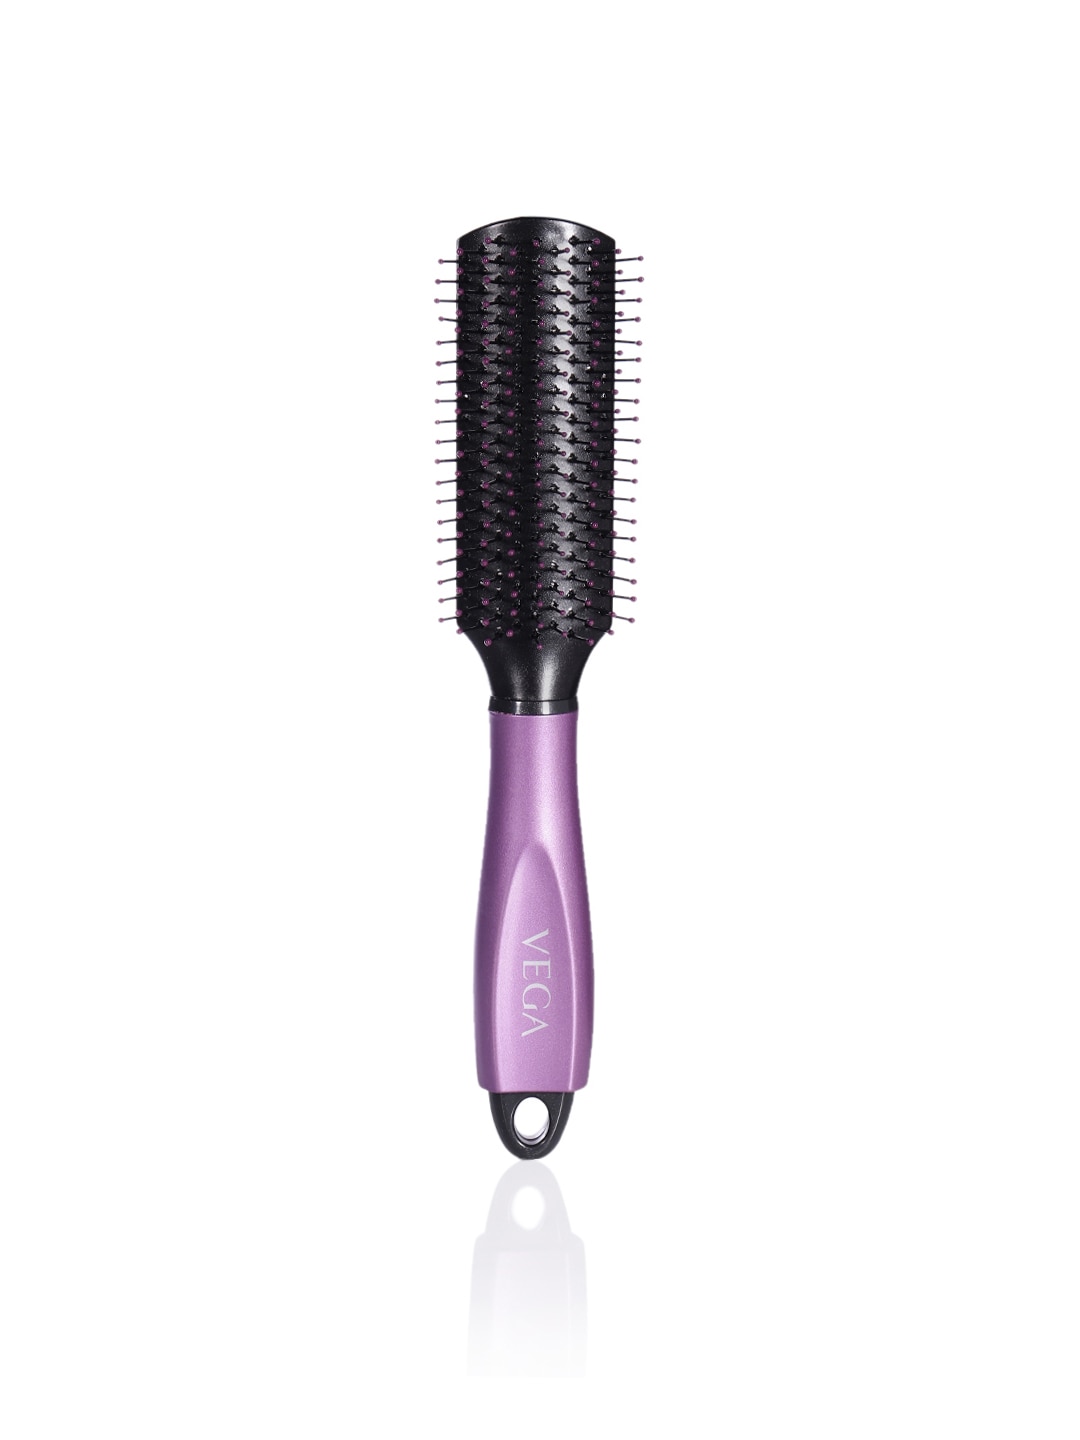 VEGA Unisex Black & Purple Flat Brush with Cleaner E18-FB Price in India